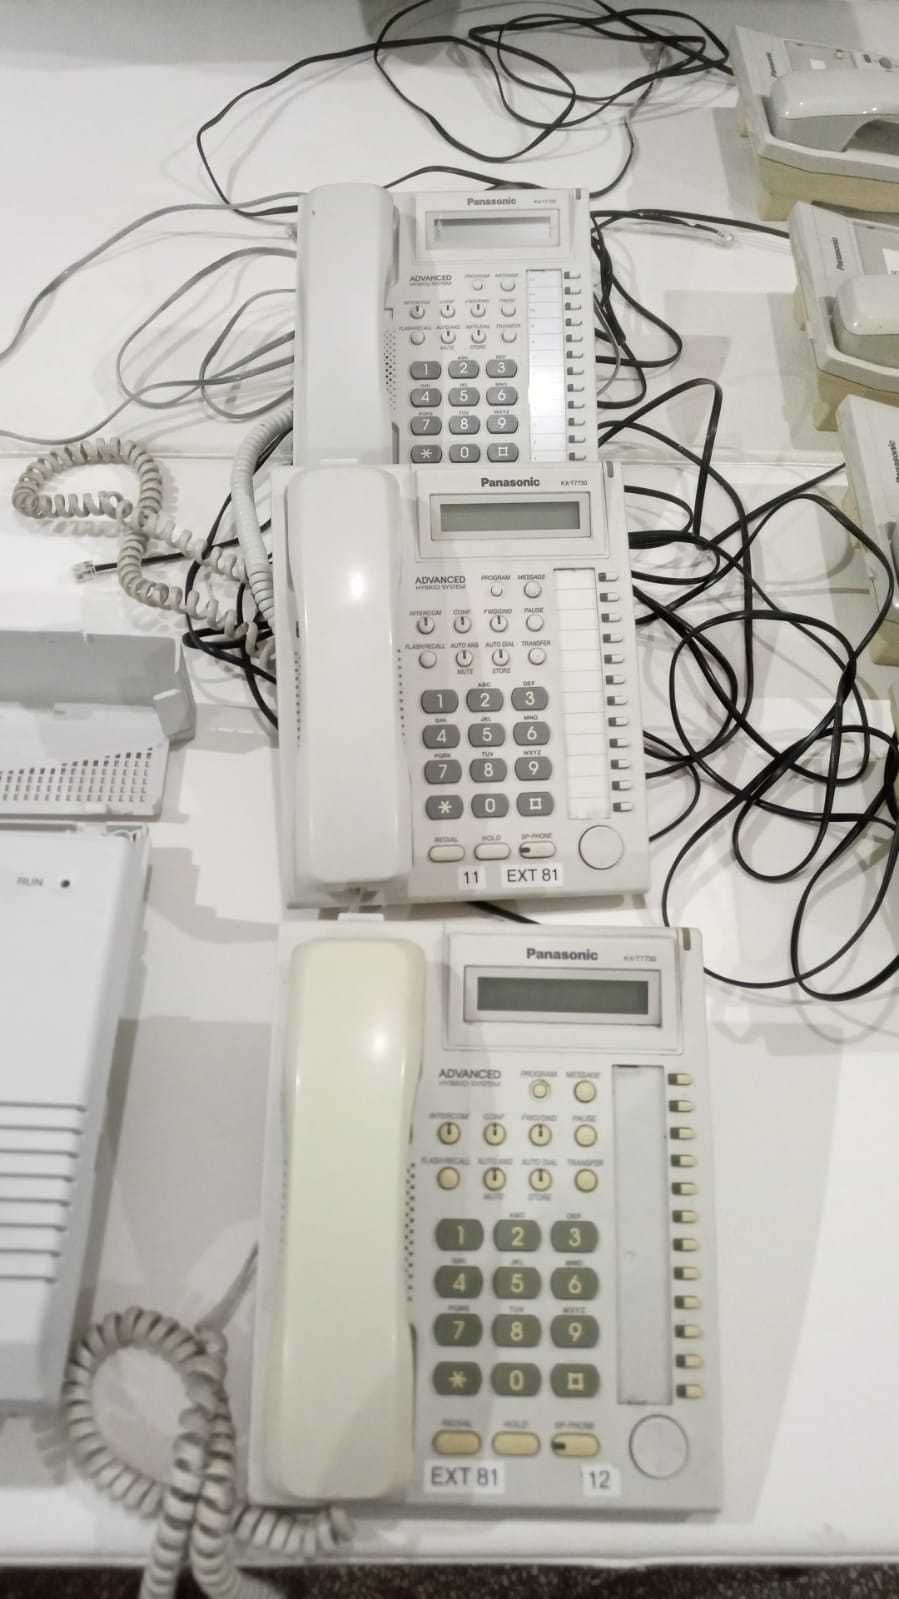 Centrale telefon, telefoane simple, telefoane cu centală, fax